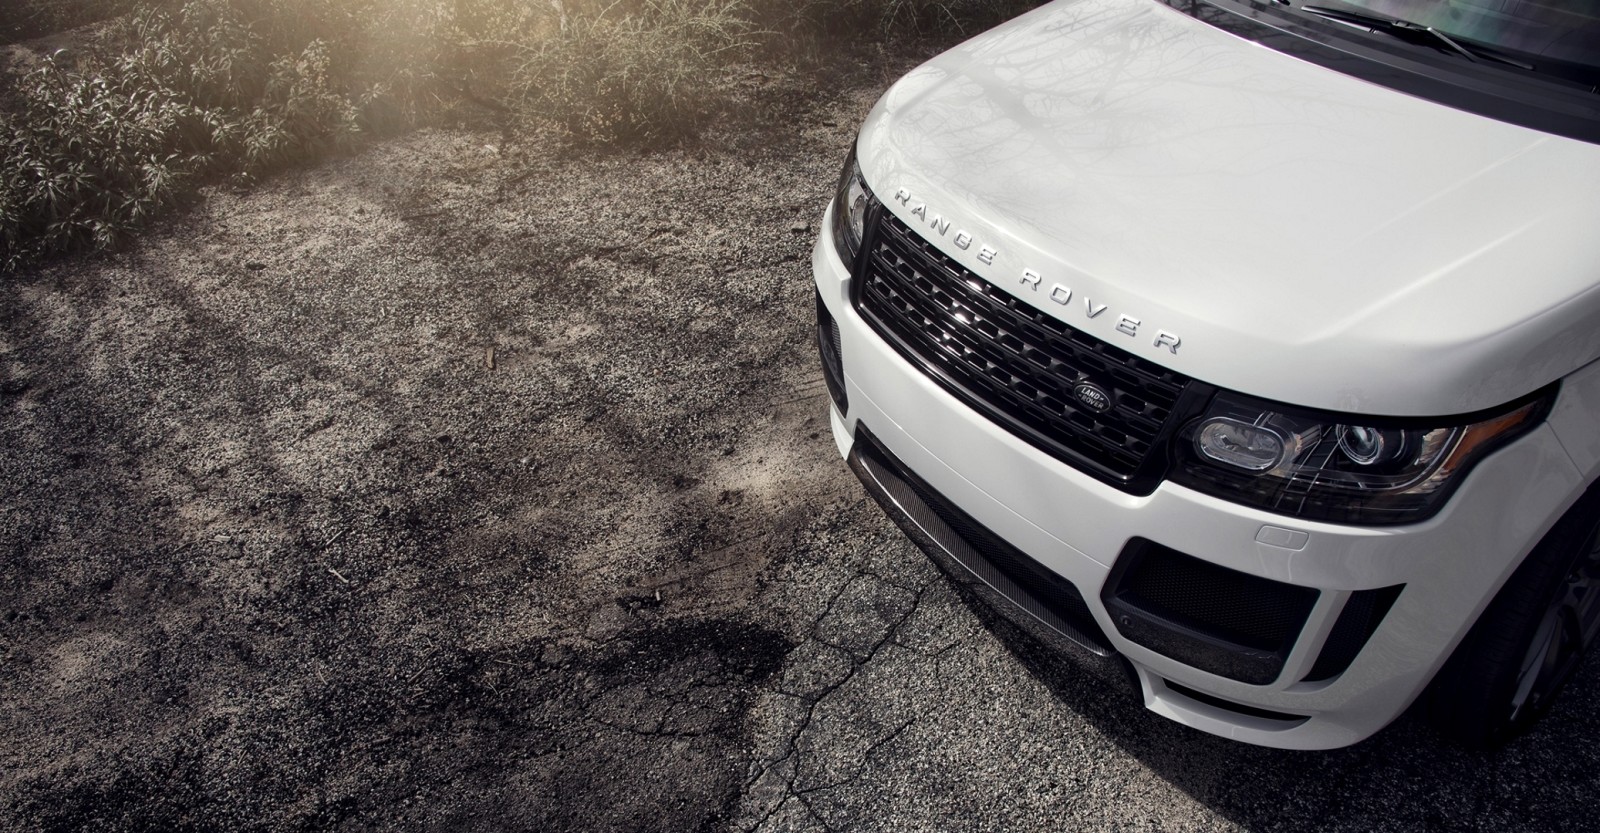 Mode, Range Rover, Land Rover, 2015